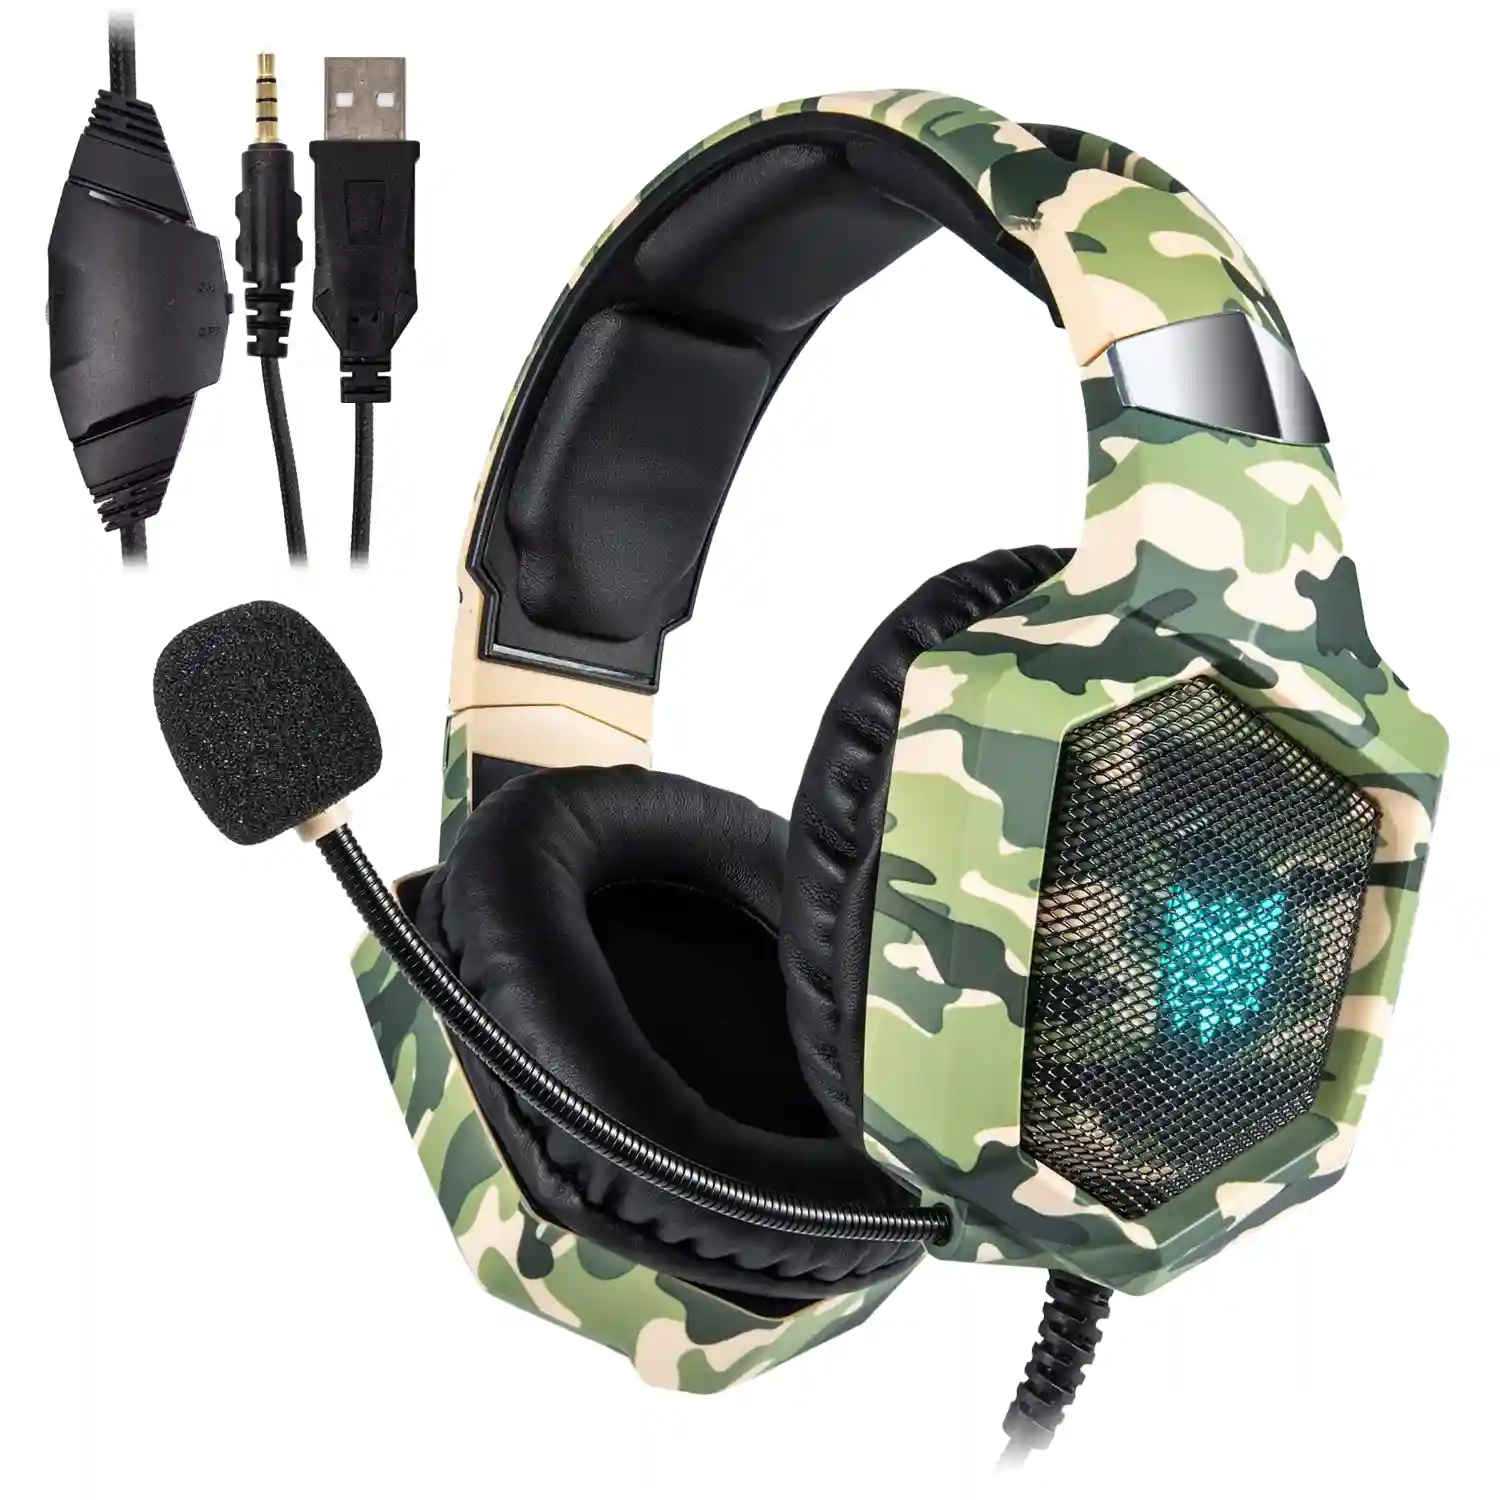 Headset Onikuma K8. Auriculares gaming con micrófono omnidireccional y  reducción de ruido. Conexión minijack, luces LED. Compatible con  smartphone, PS4, PS5, PC, etc.